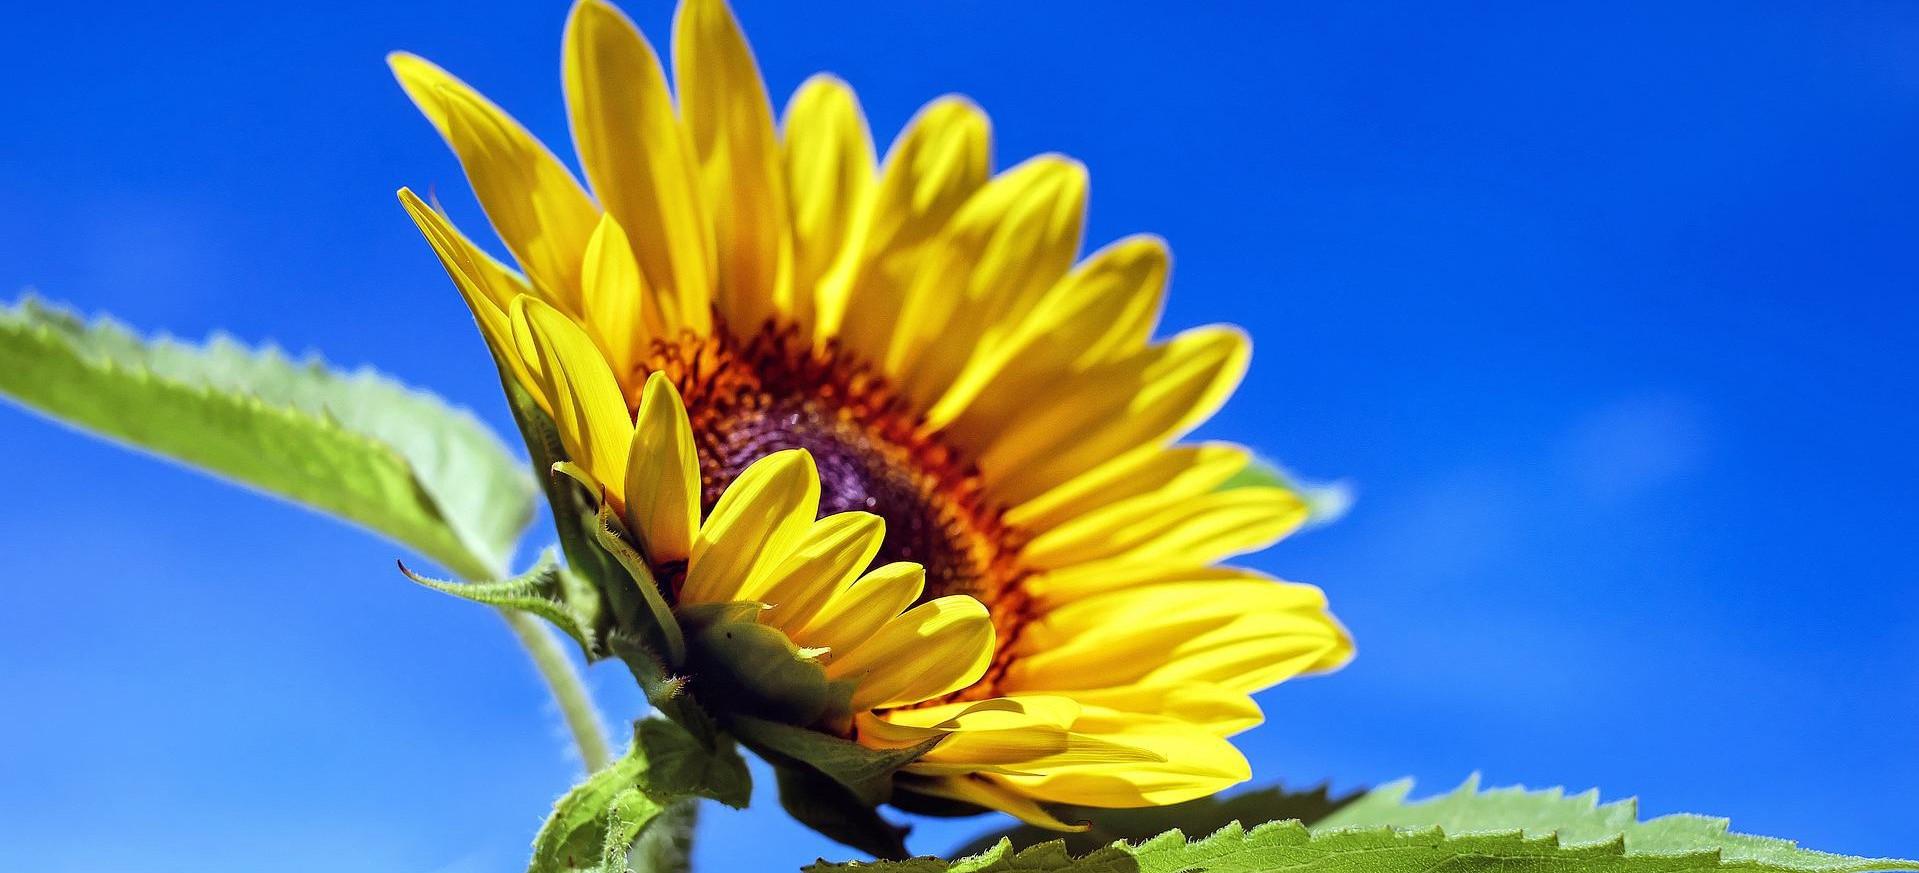 sunflower-1536088_19202.jpg